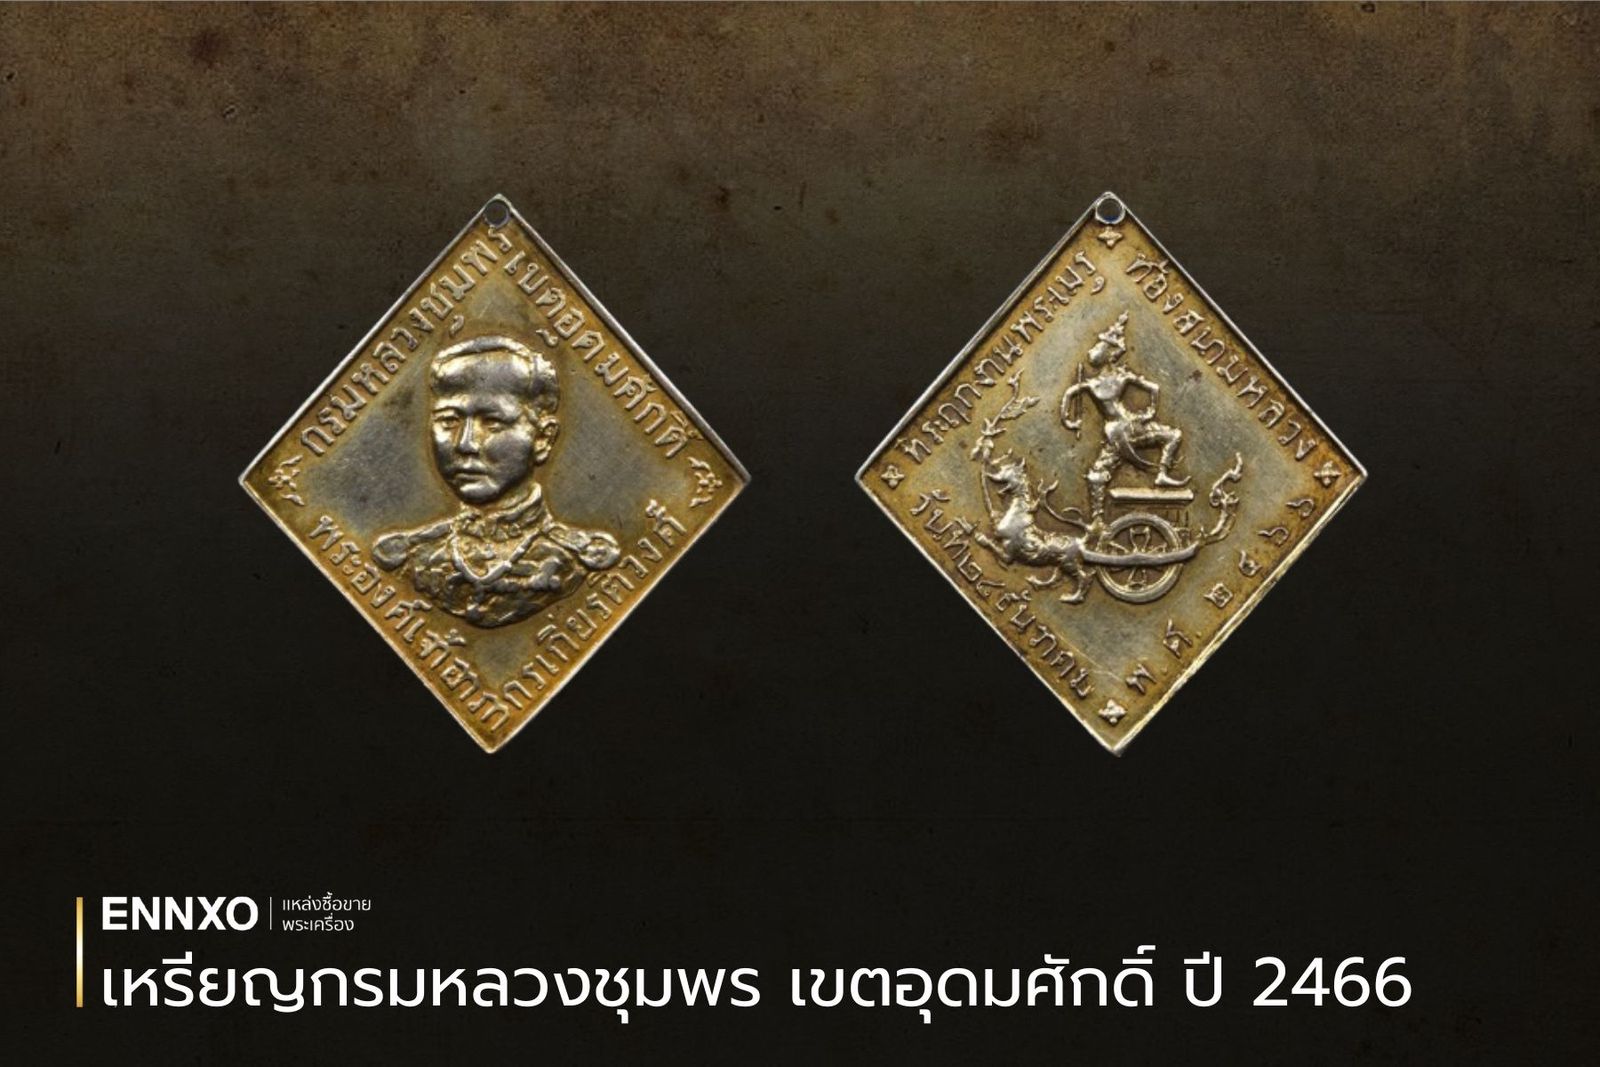 เหรียญข้าวหลามตัดกรมหลวงชุมพร เขตอุดมศักดิ์ ปี พ.ศ. 2466